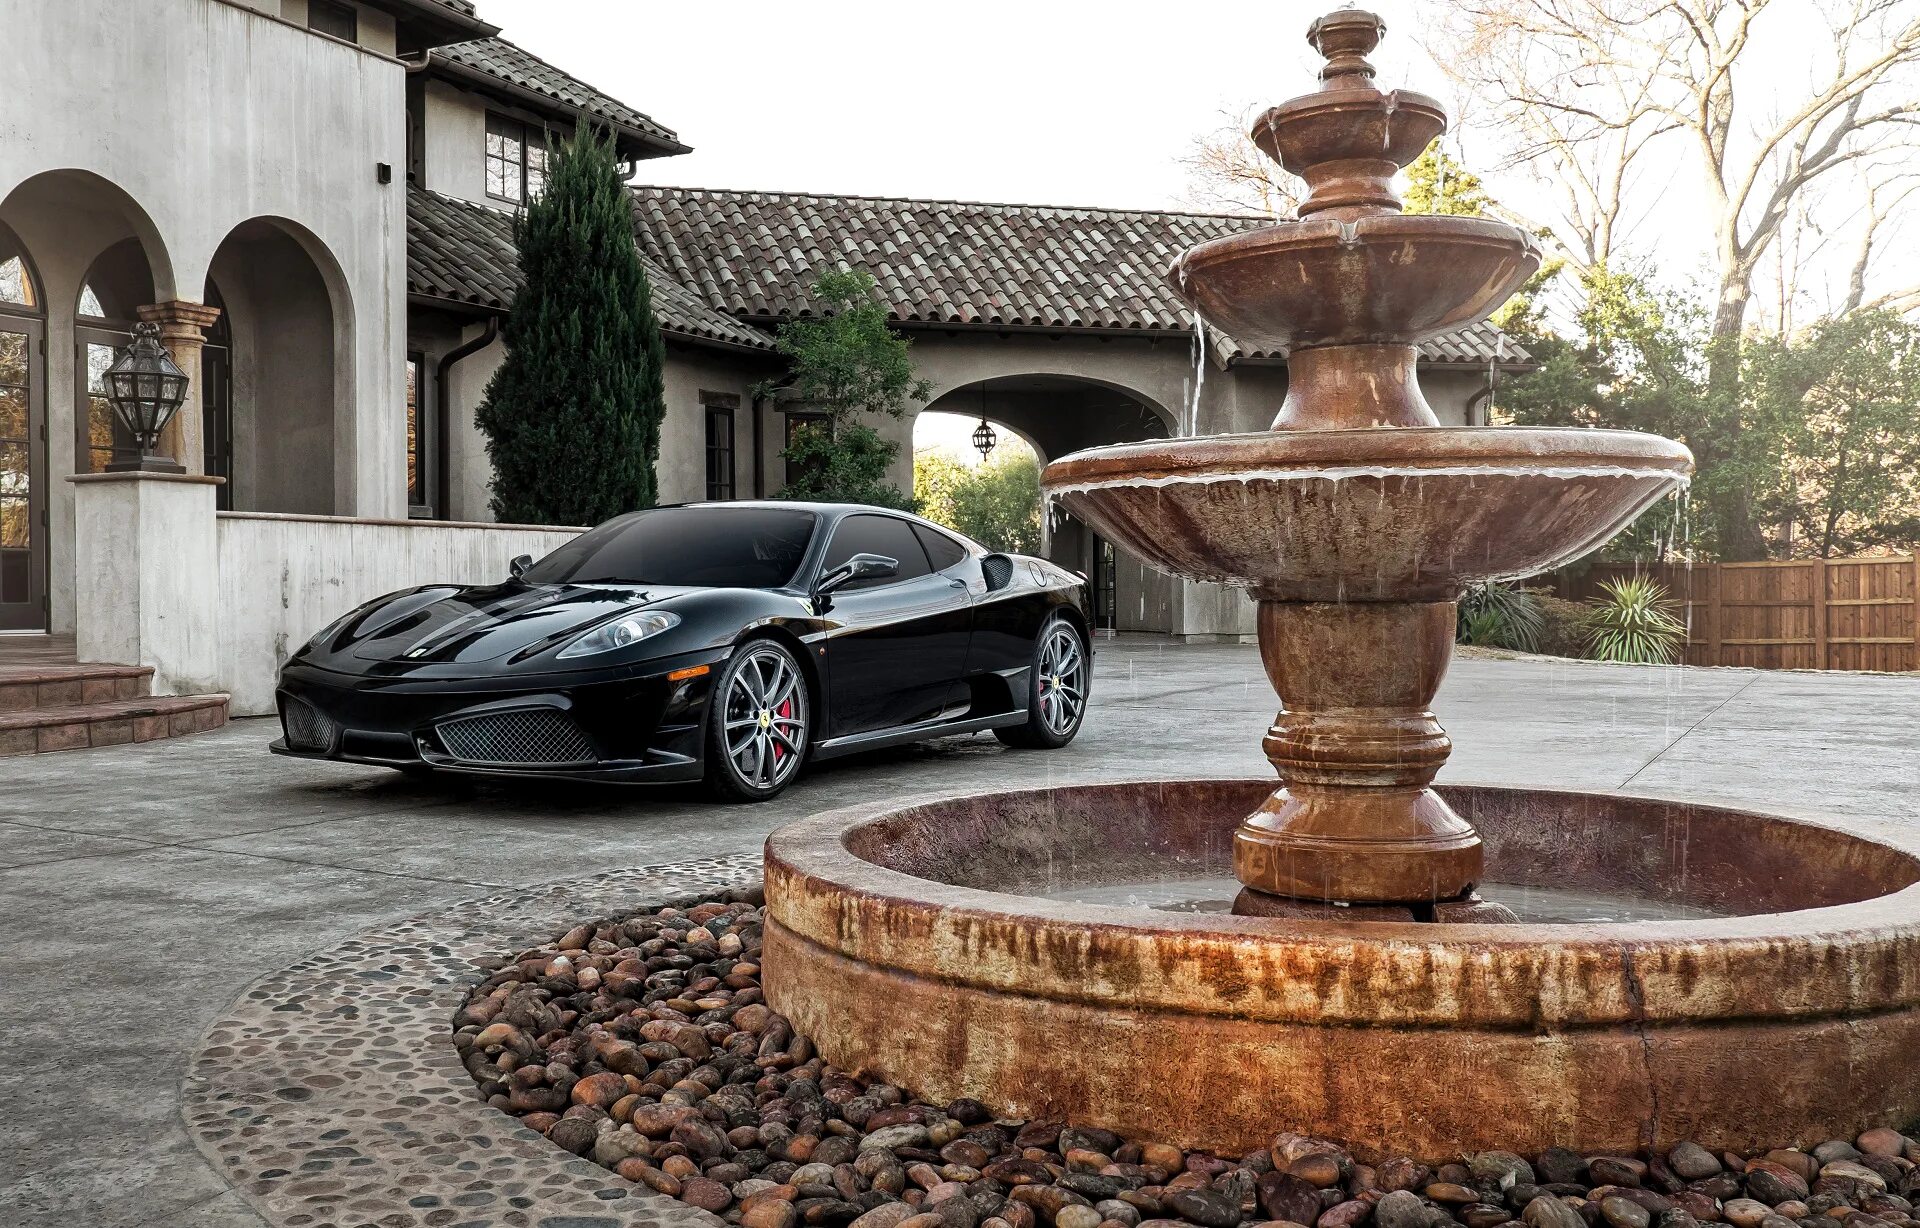 Купить авто в камне. Ferrari f430 особняк. Ferrari f430 Black. Дорогая машина во дворе. Особняк с фонтаном.